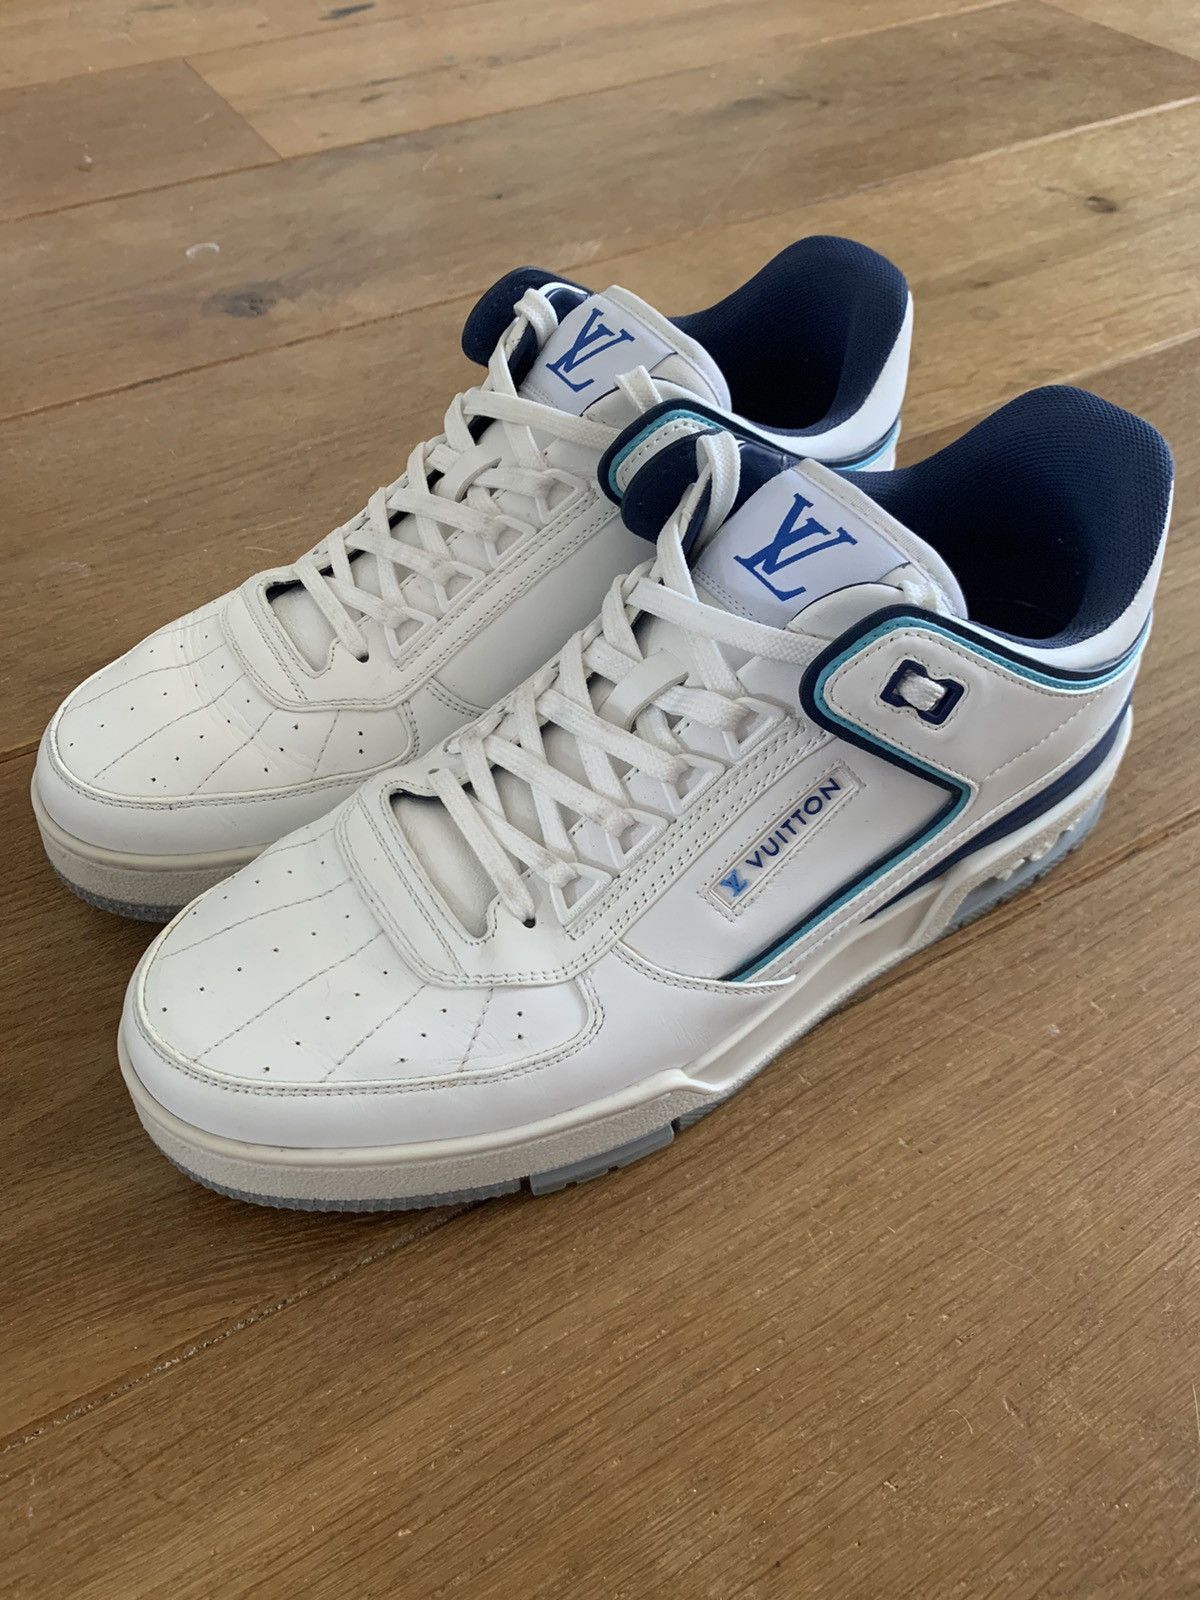 Louis Vuitton LV Trainer Sneaker Blue. Size 06.0